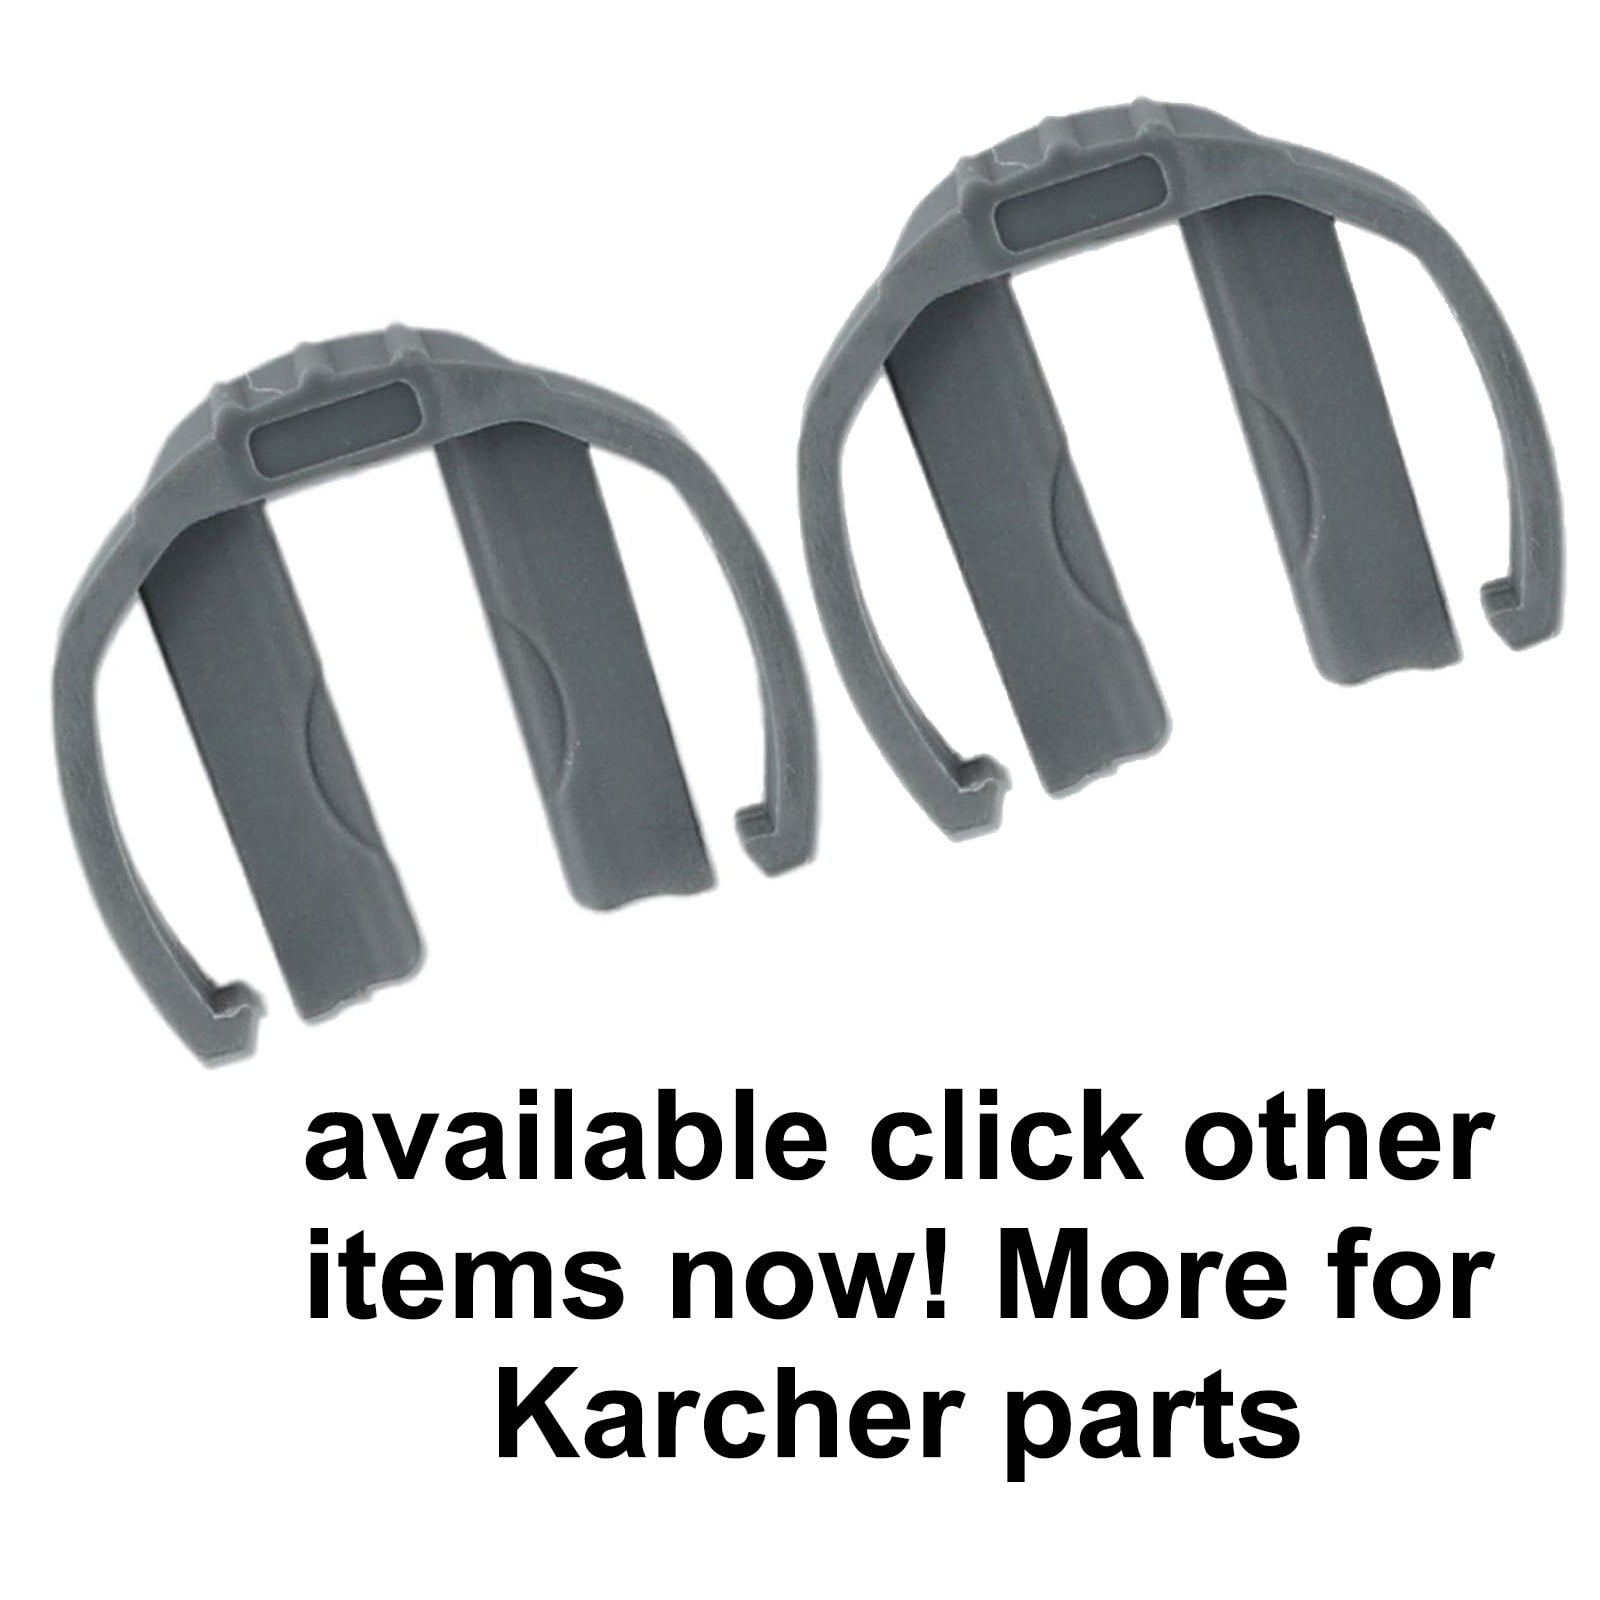 3pcs C Clip Steckverbinder kompatibel mit Karcher K2 K3 K7